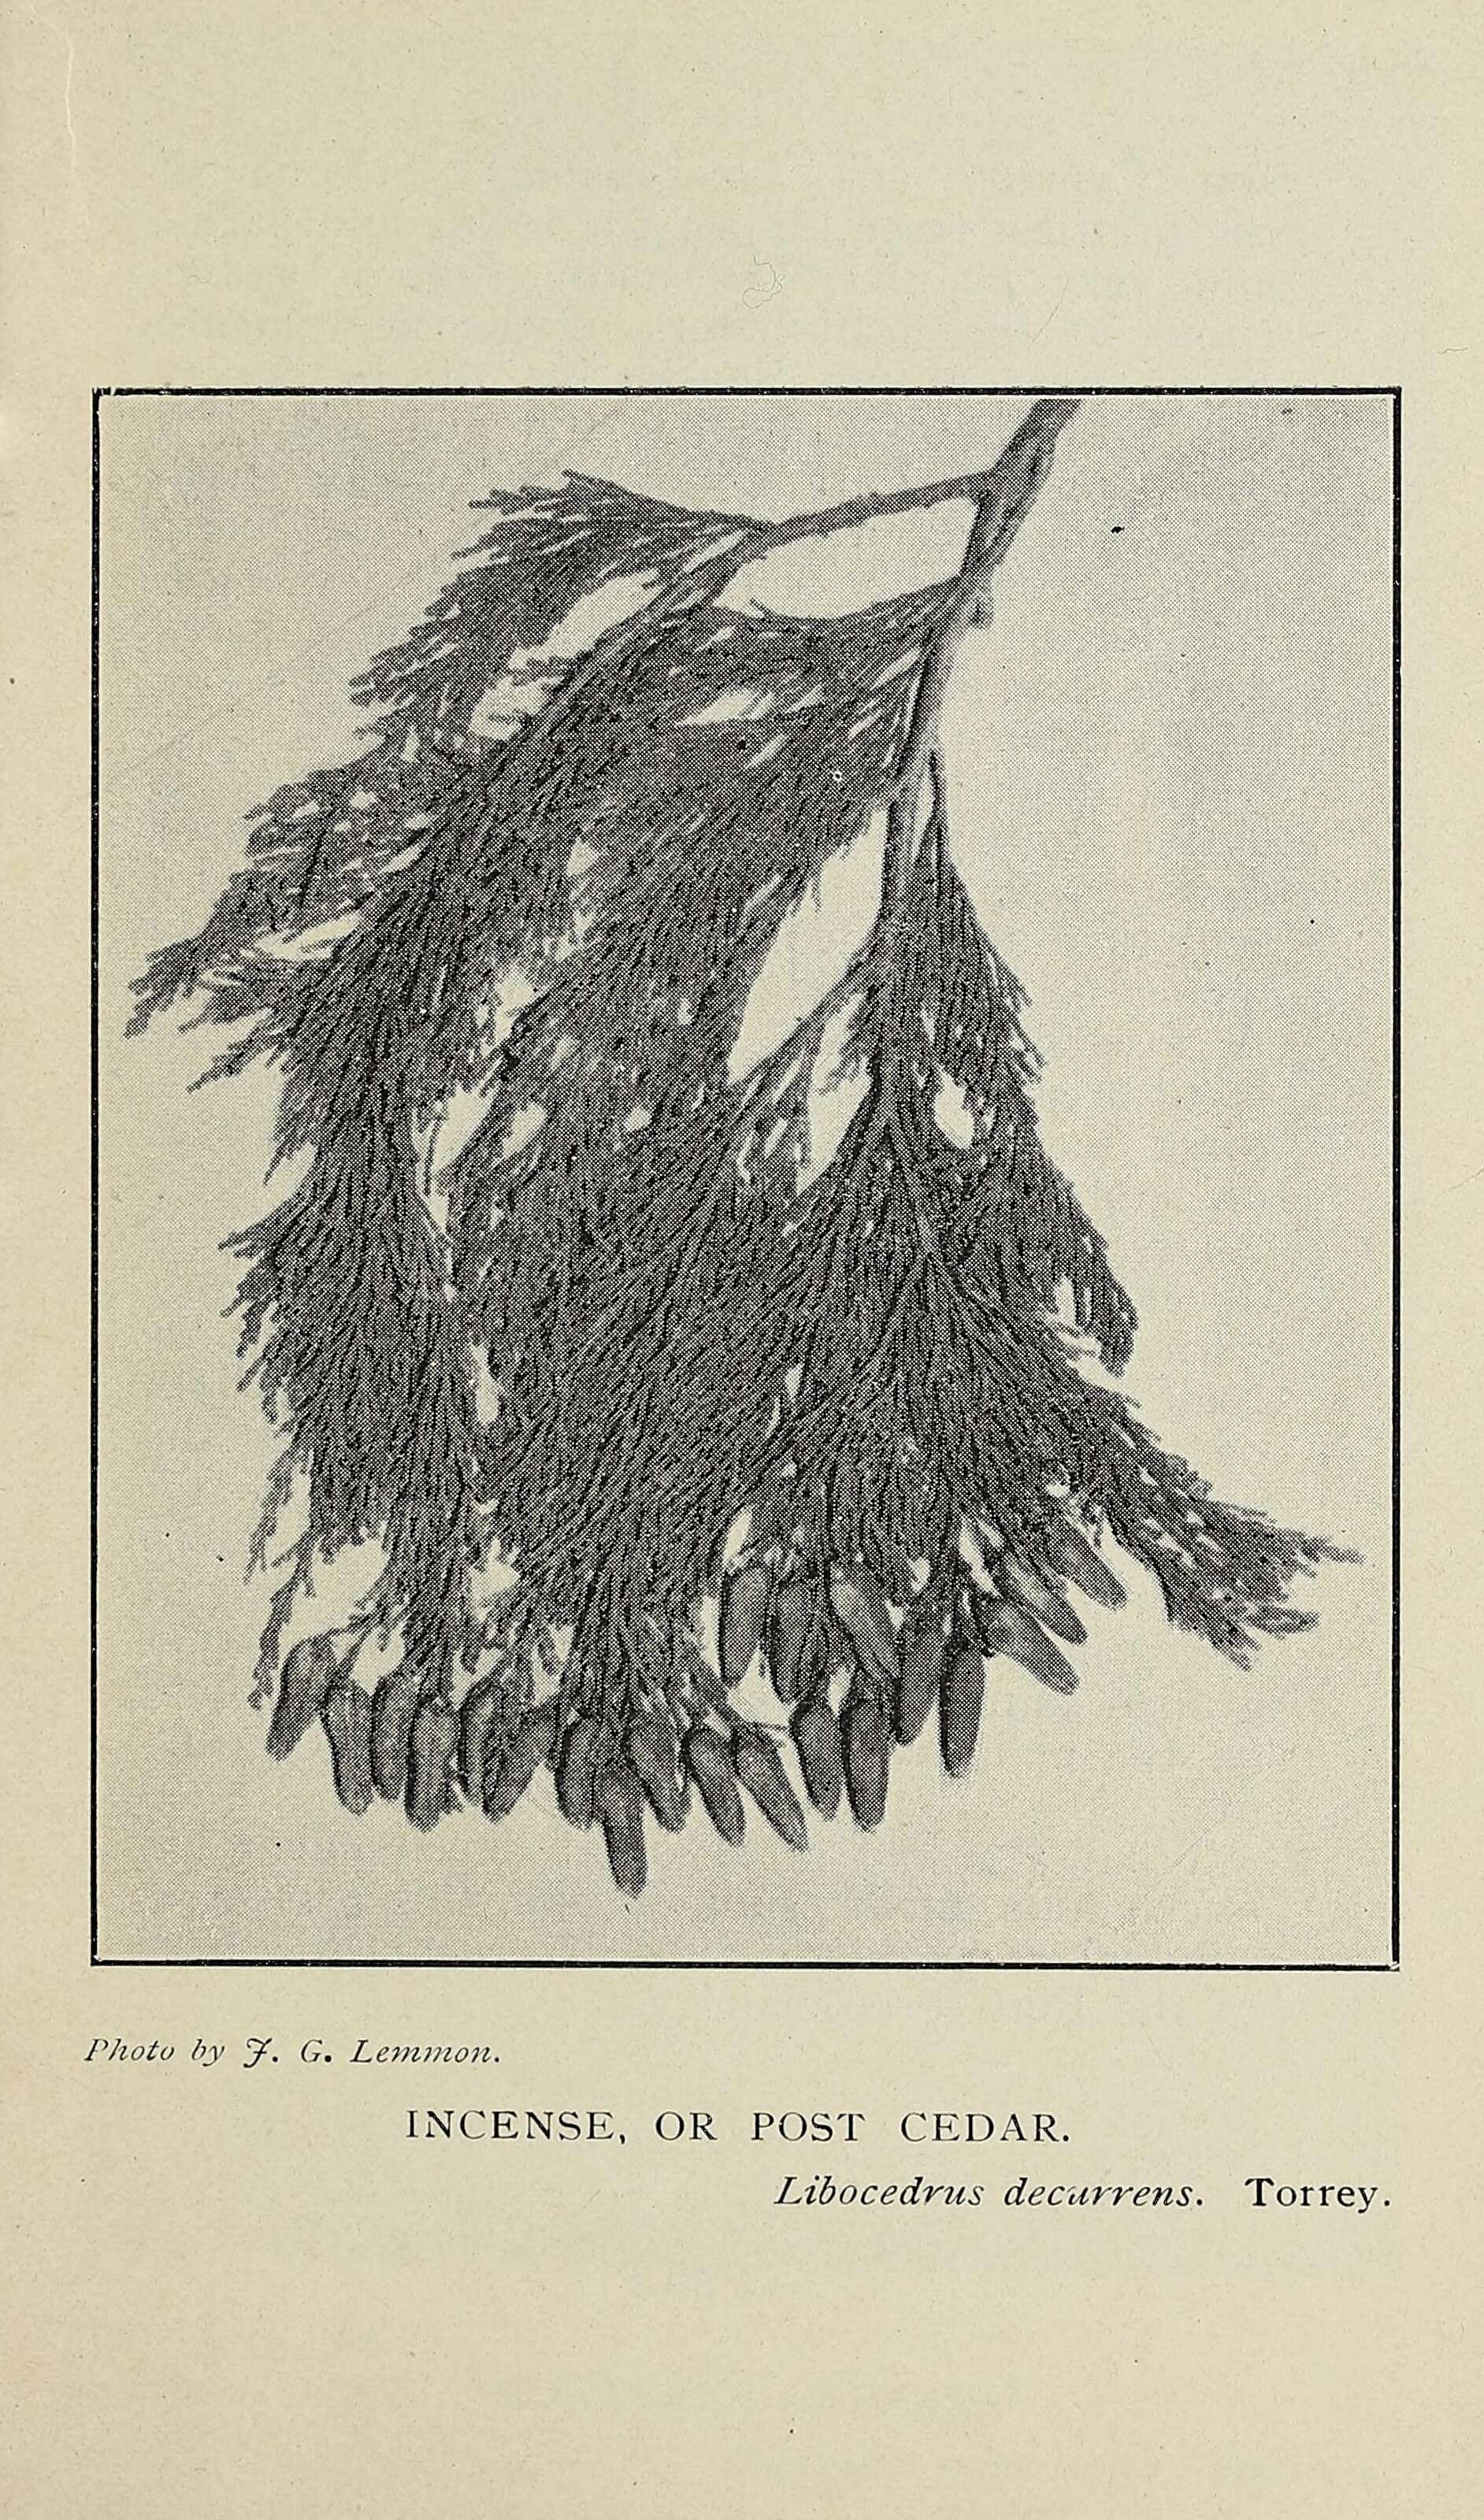 Sivun Sypressikasvit kuva